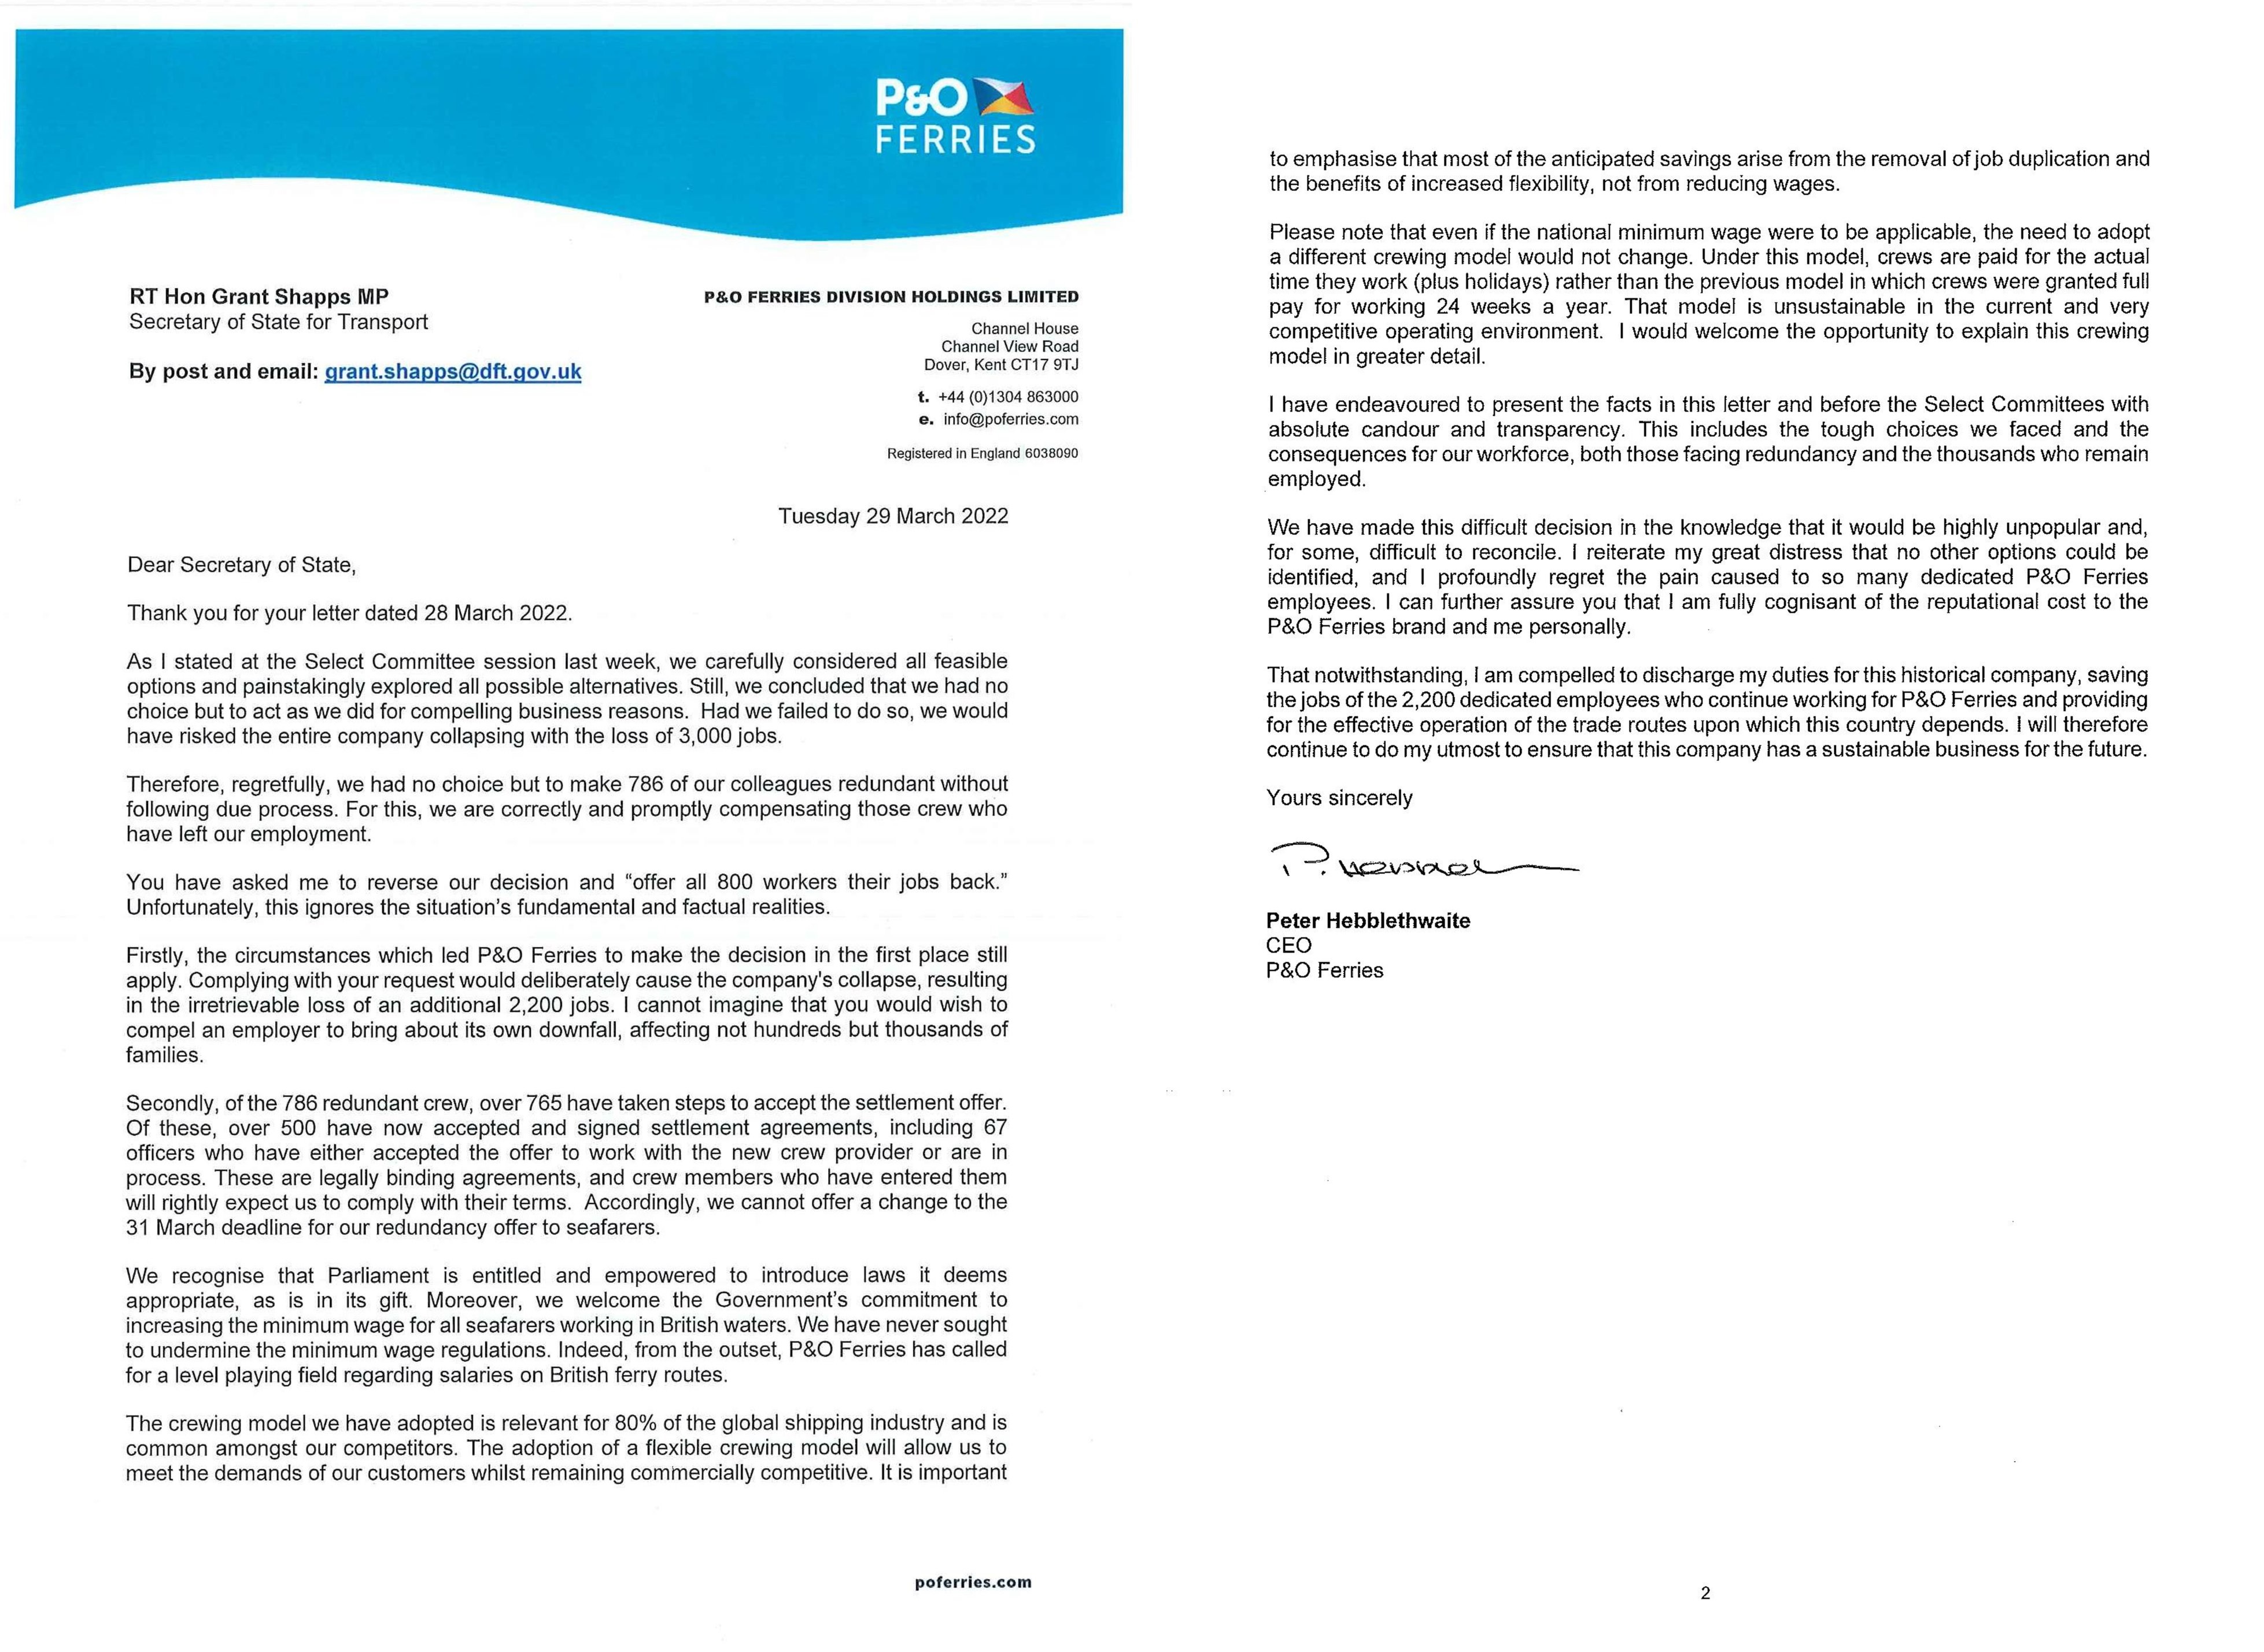 20220329 Dover PO Ferries brief aan regering